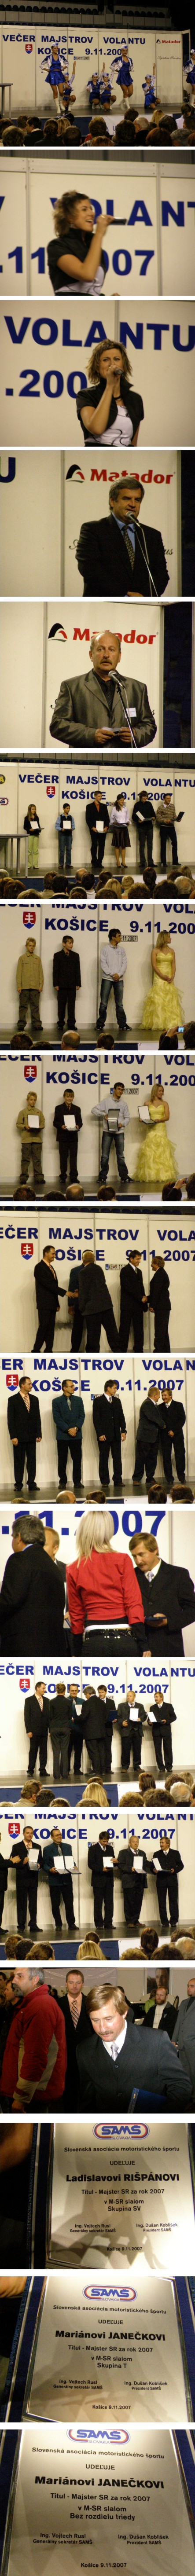 majster SR STEEL ARENA Košice 9.11.2007